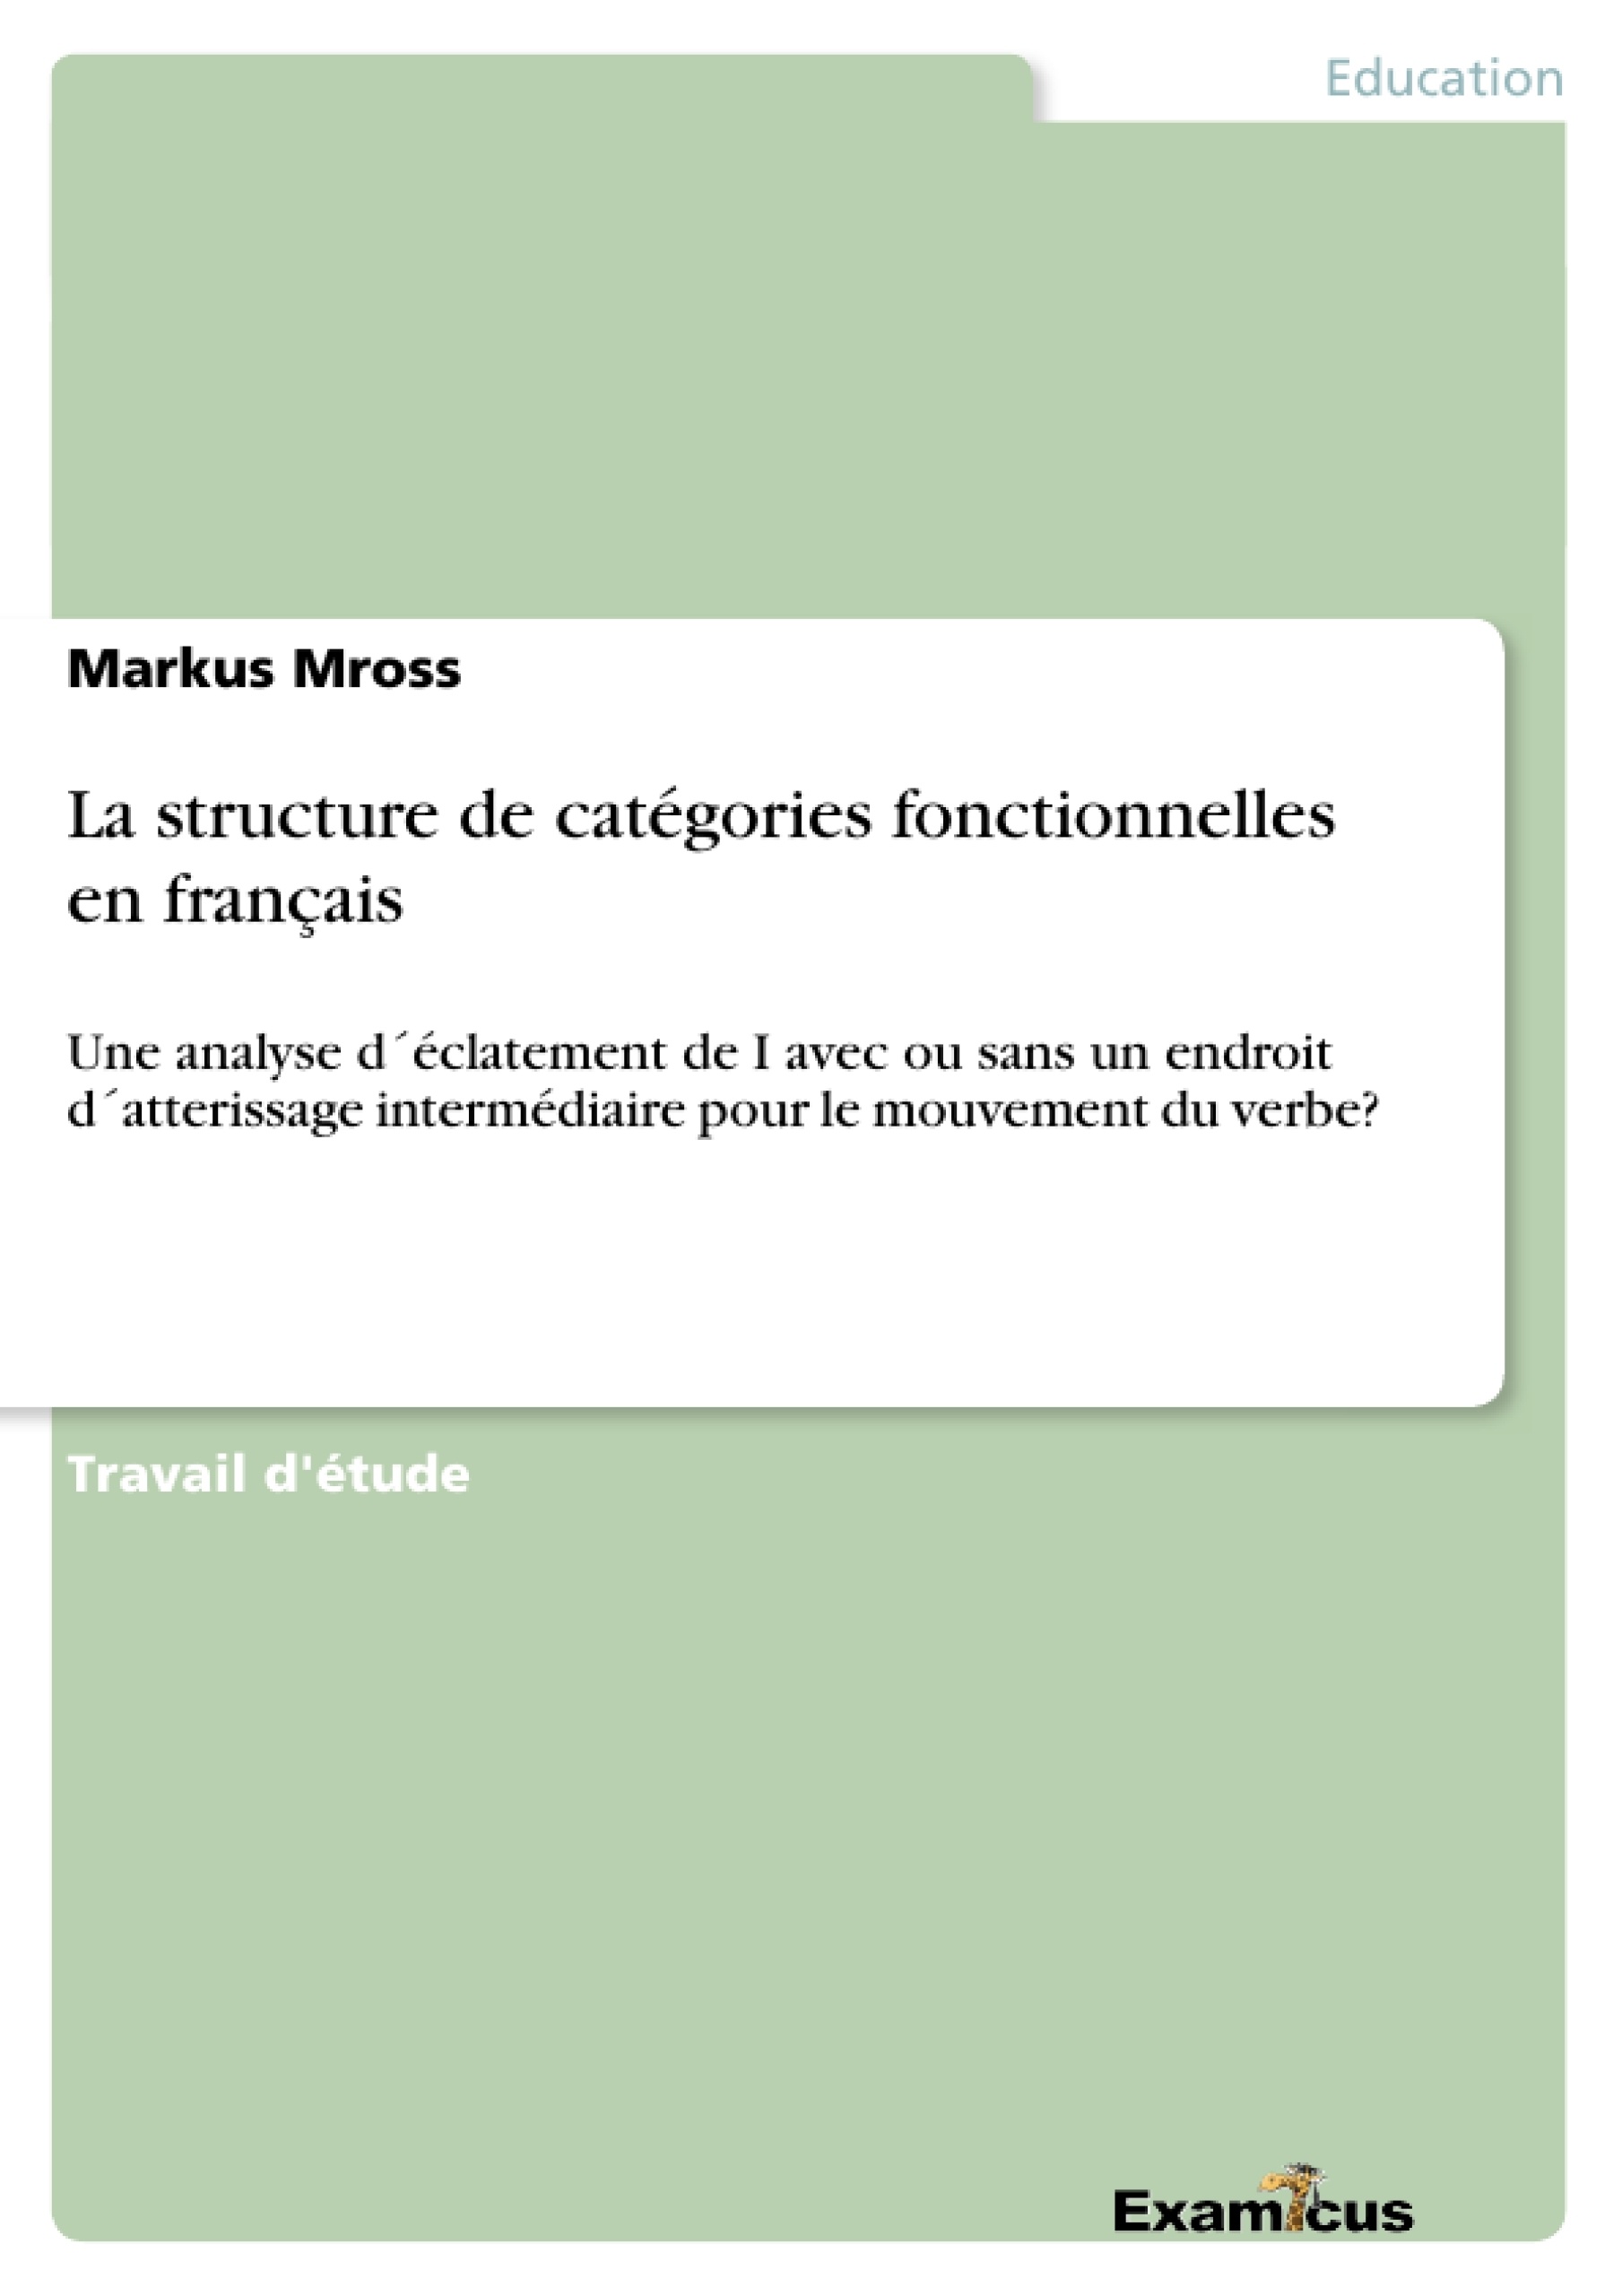 Título: La structure de catégories fonctionnelles en français